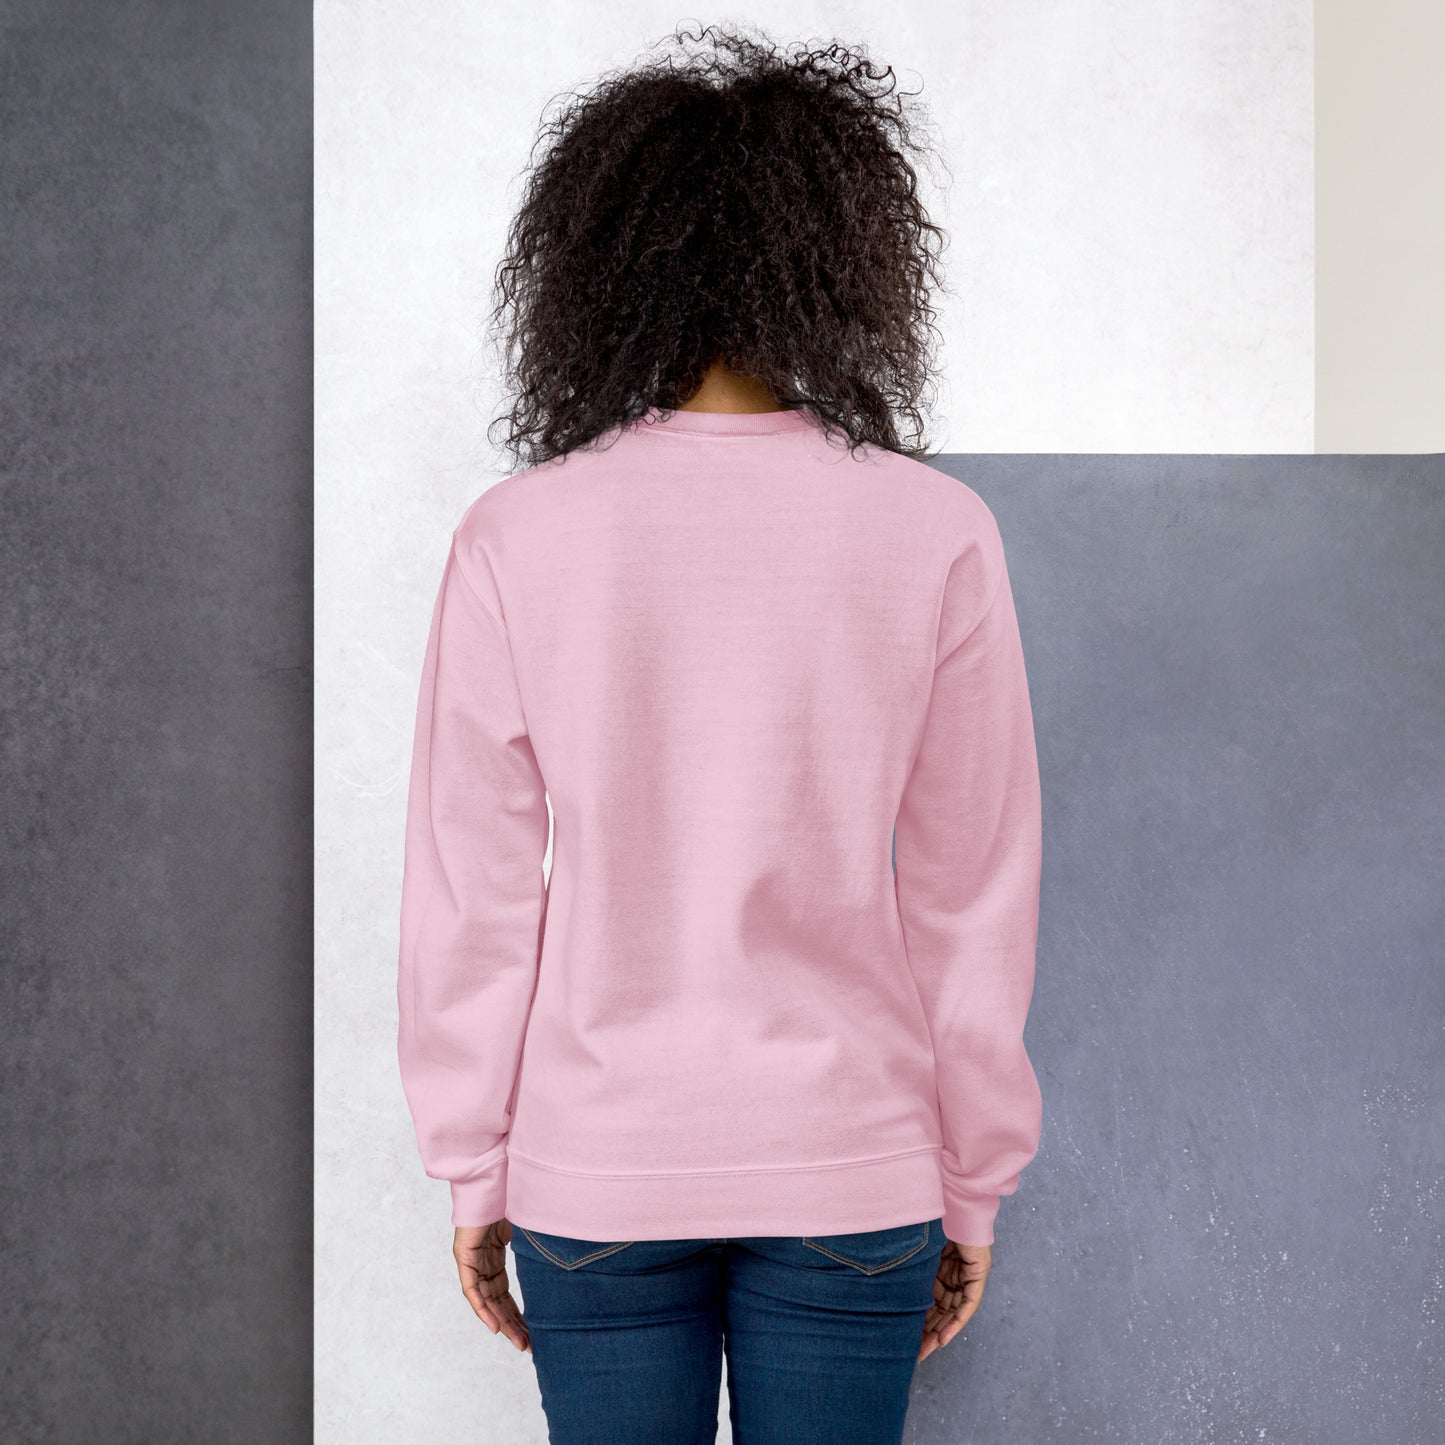 Keshker Unisex Sweatshirt for woman